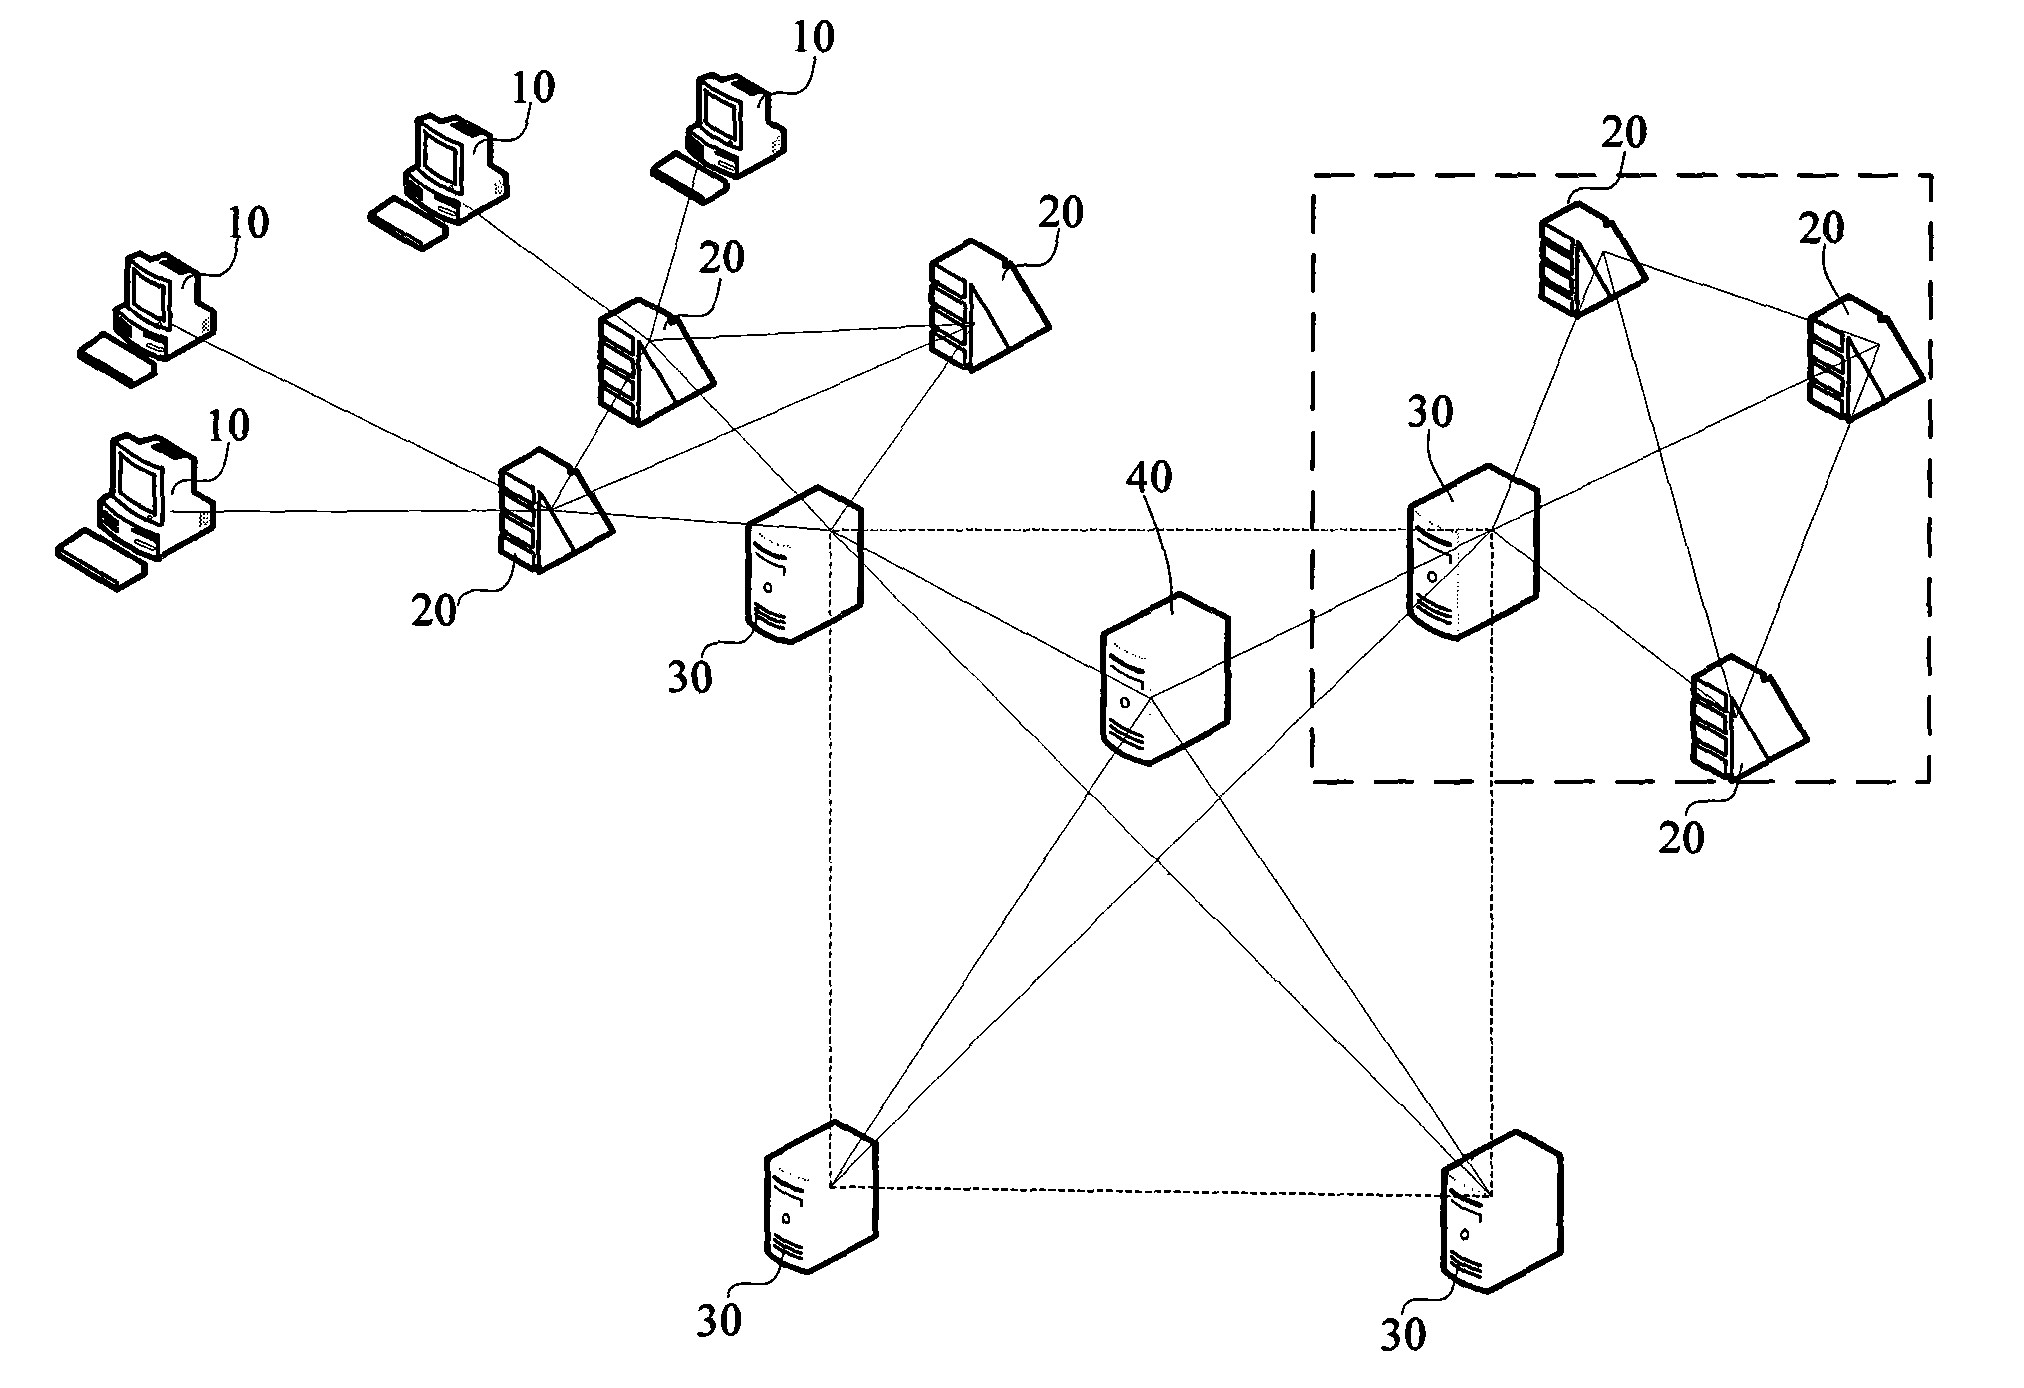 Cluster server of instant communication system and method of inter-clusters communication